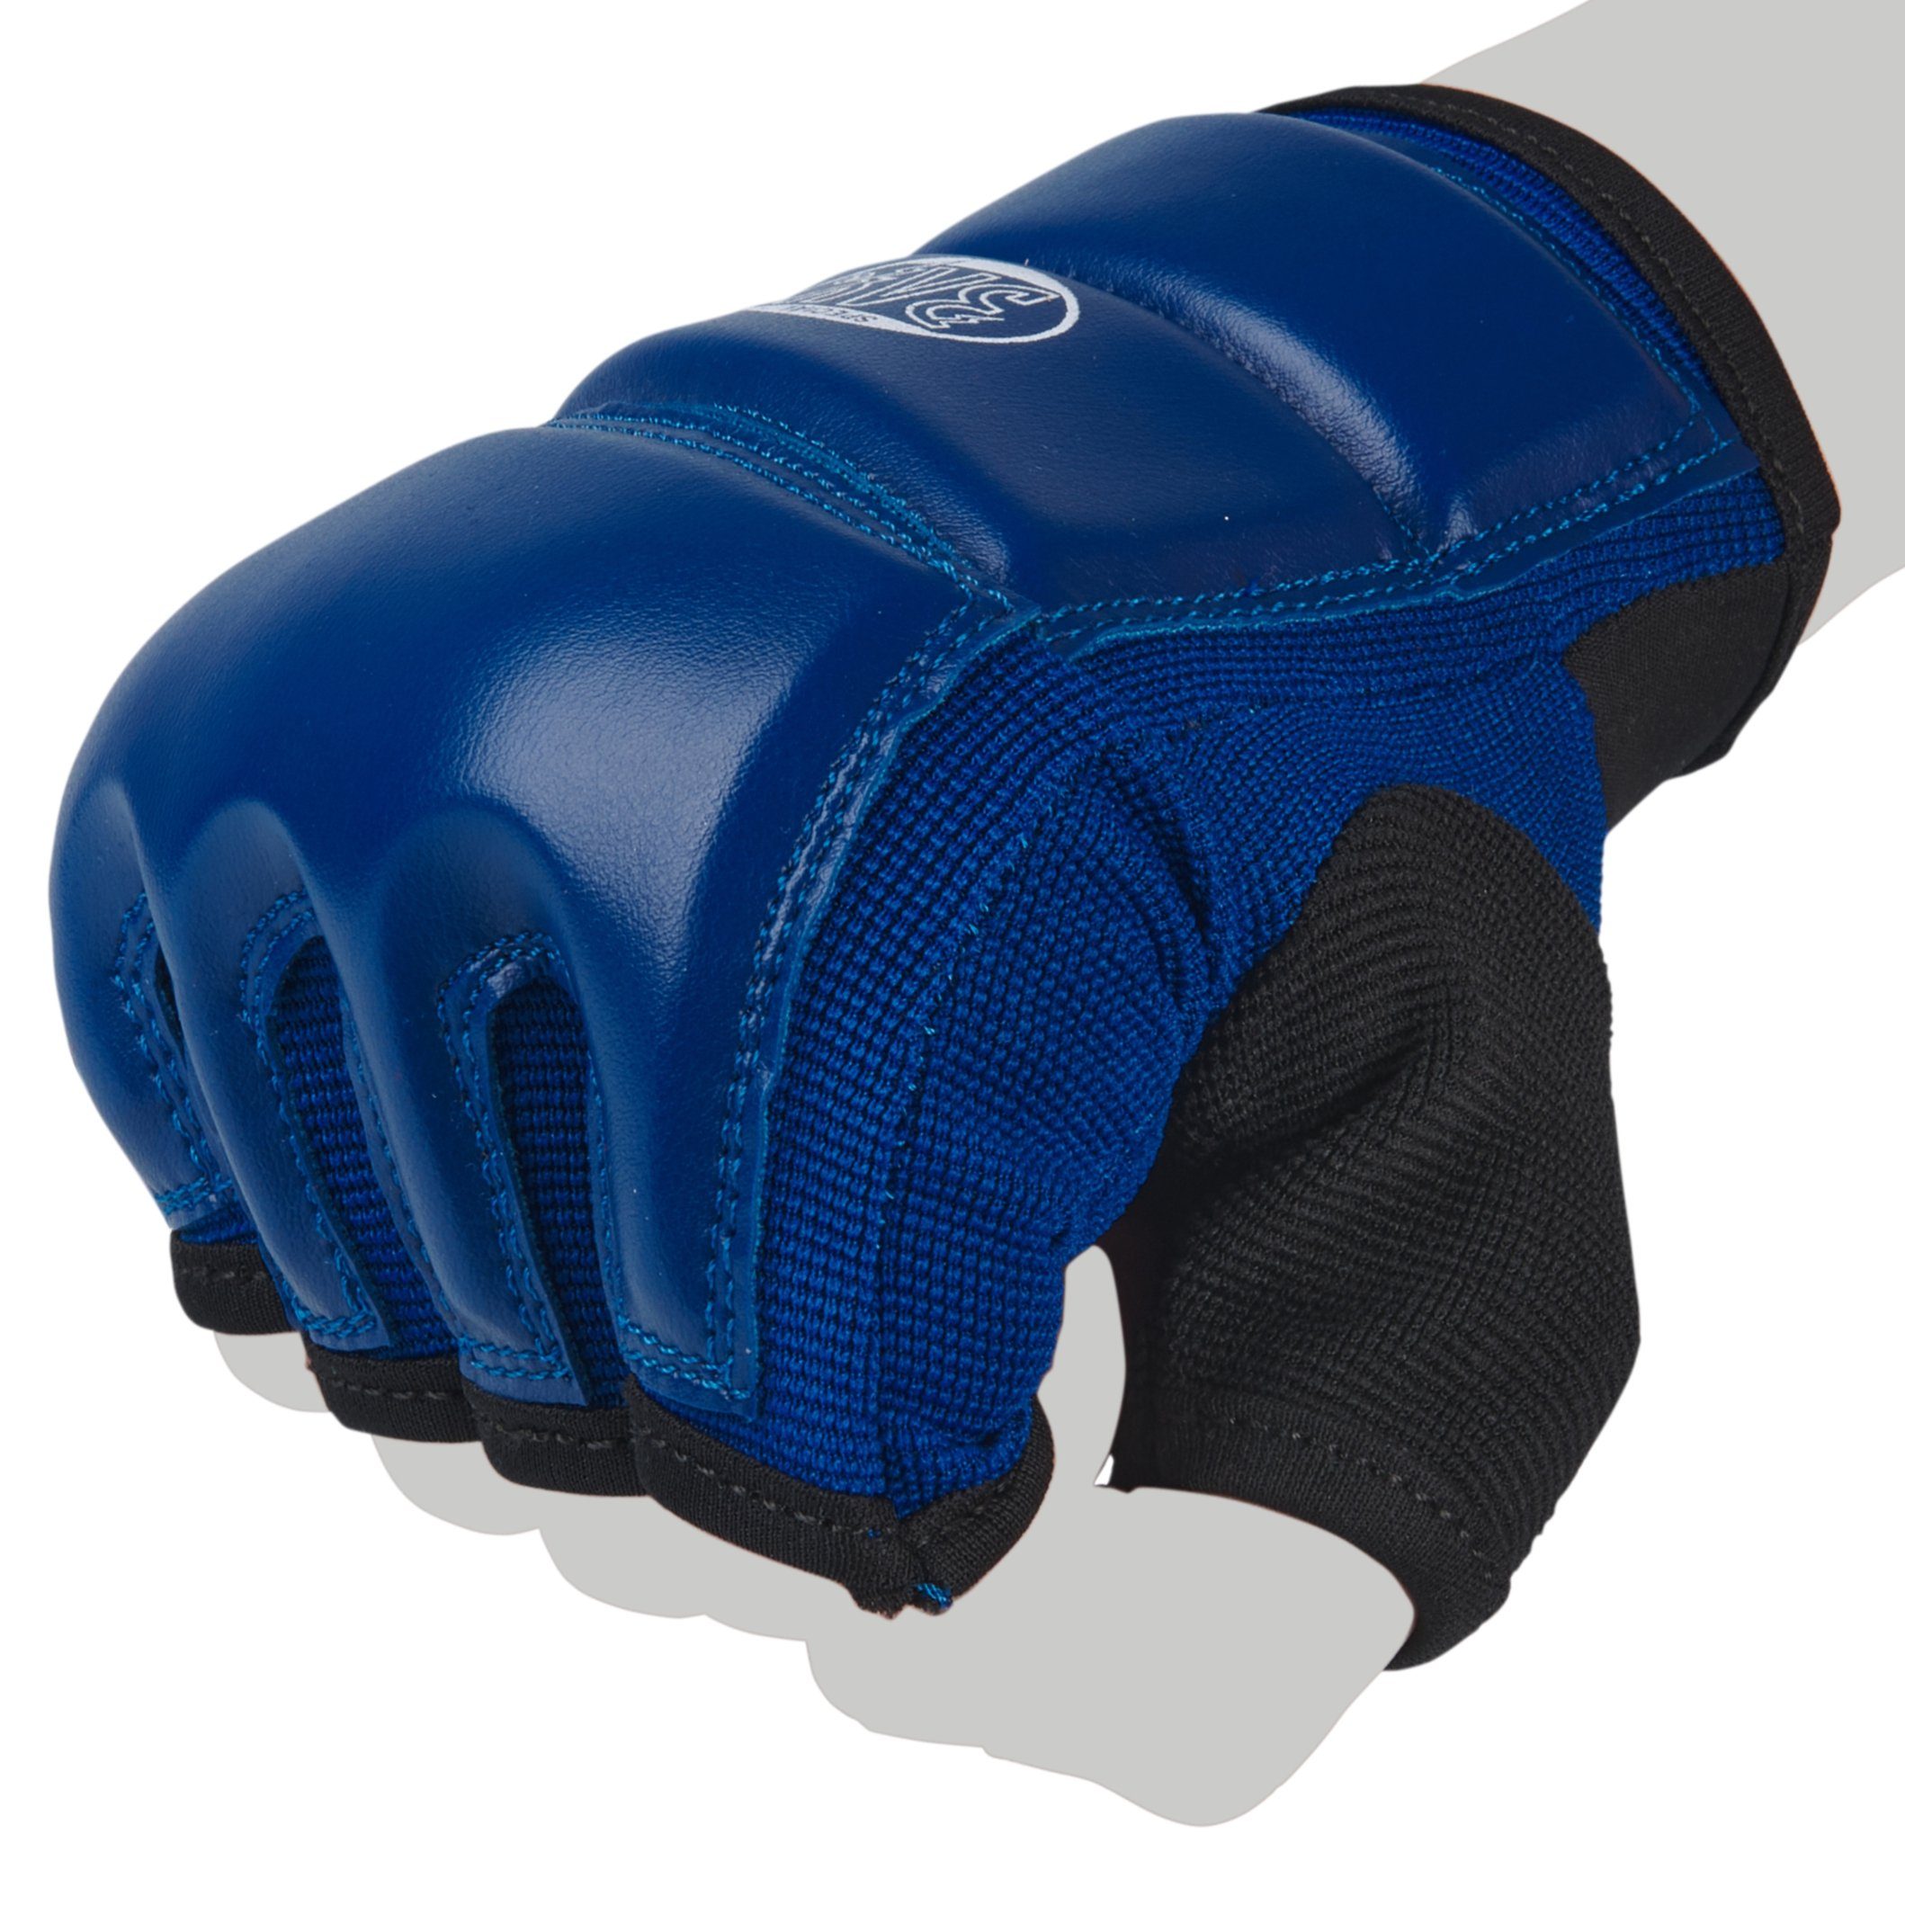 und - Boxhandschuhe Sandsack Boxsack XXL Erwachsene XS blau, BAY-Sports Sandsackhandschuhe Handschutz Kinder Touch